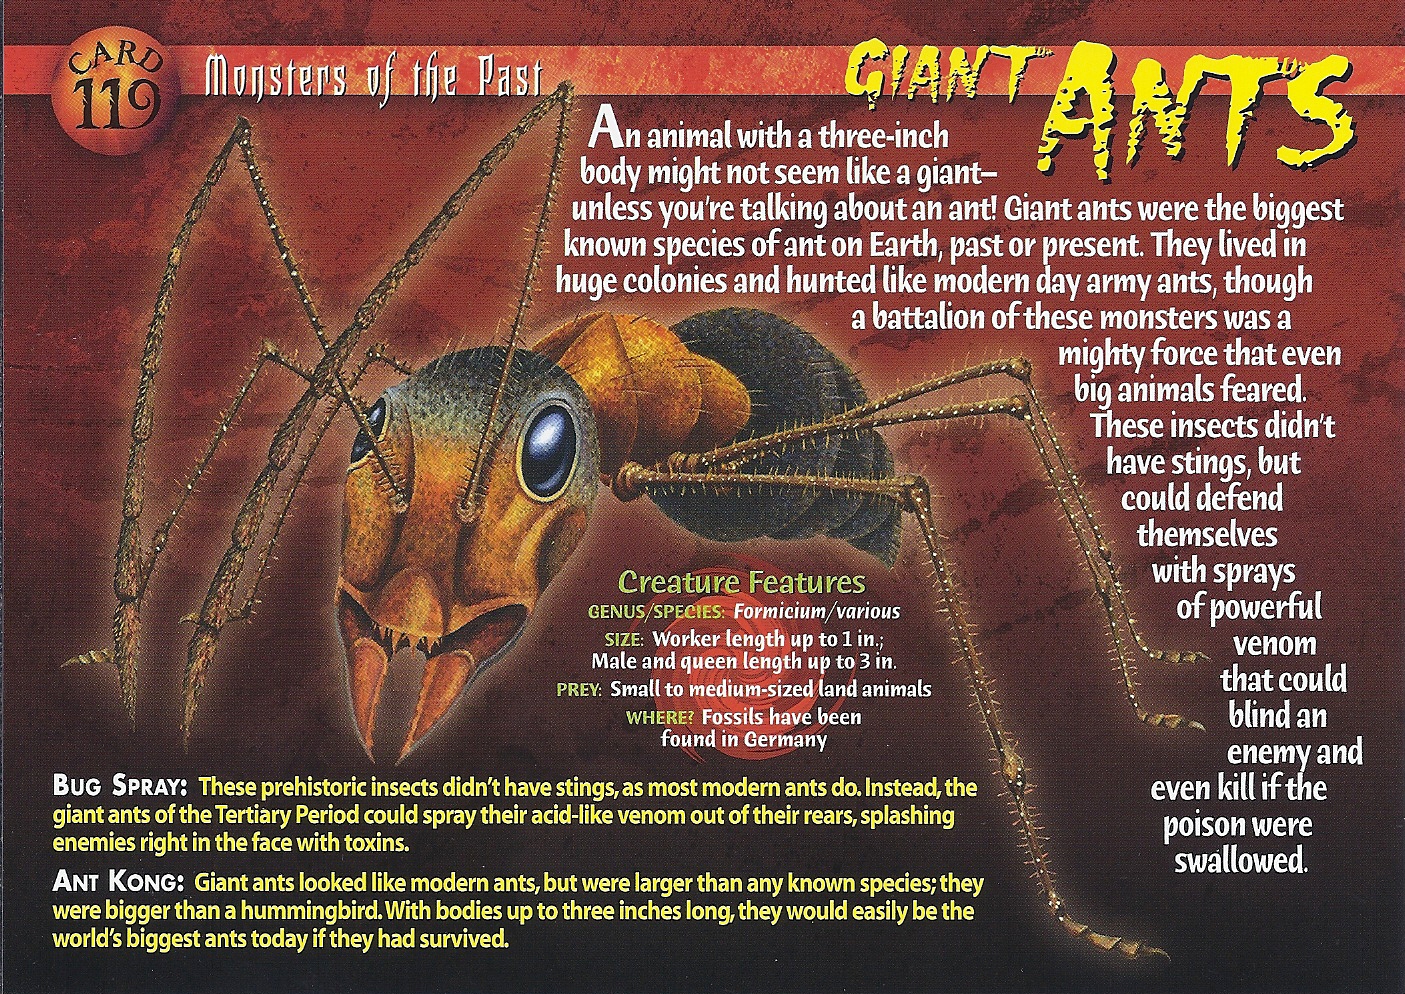 Giant Ants, Weird n' Wild Creatures Wiki